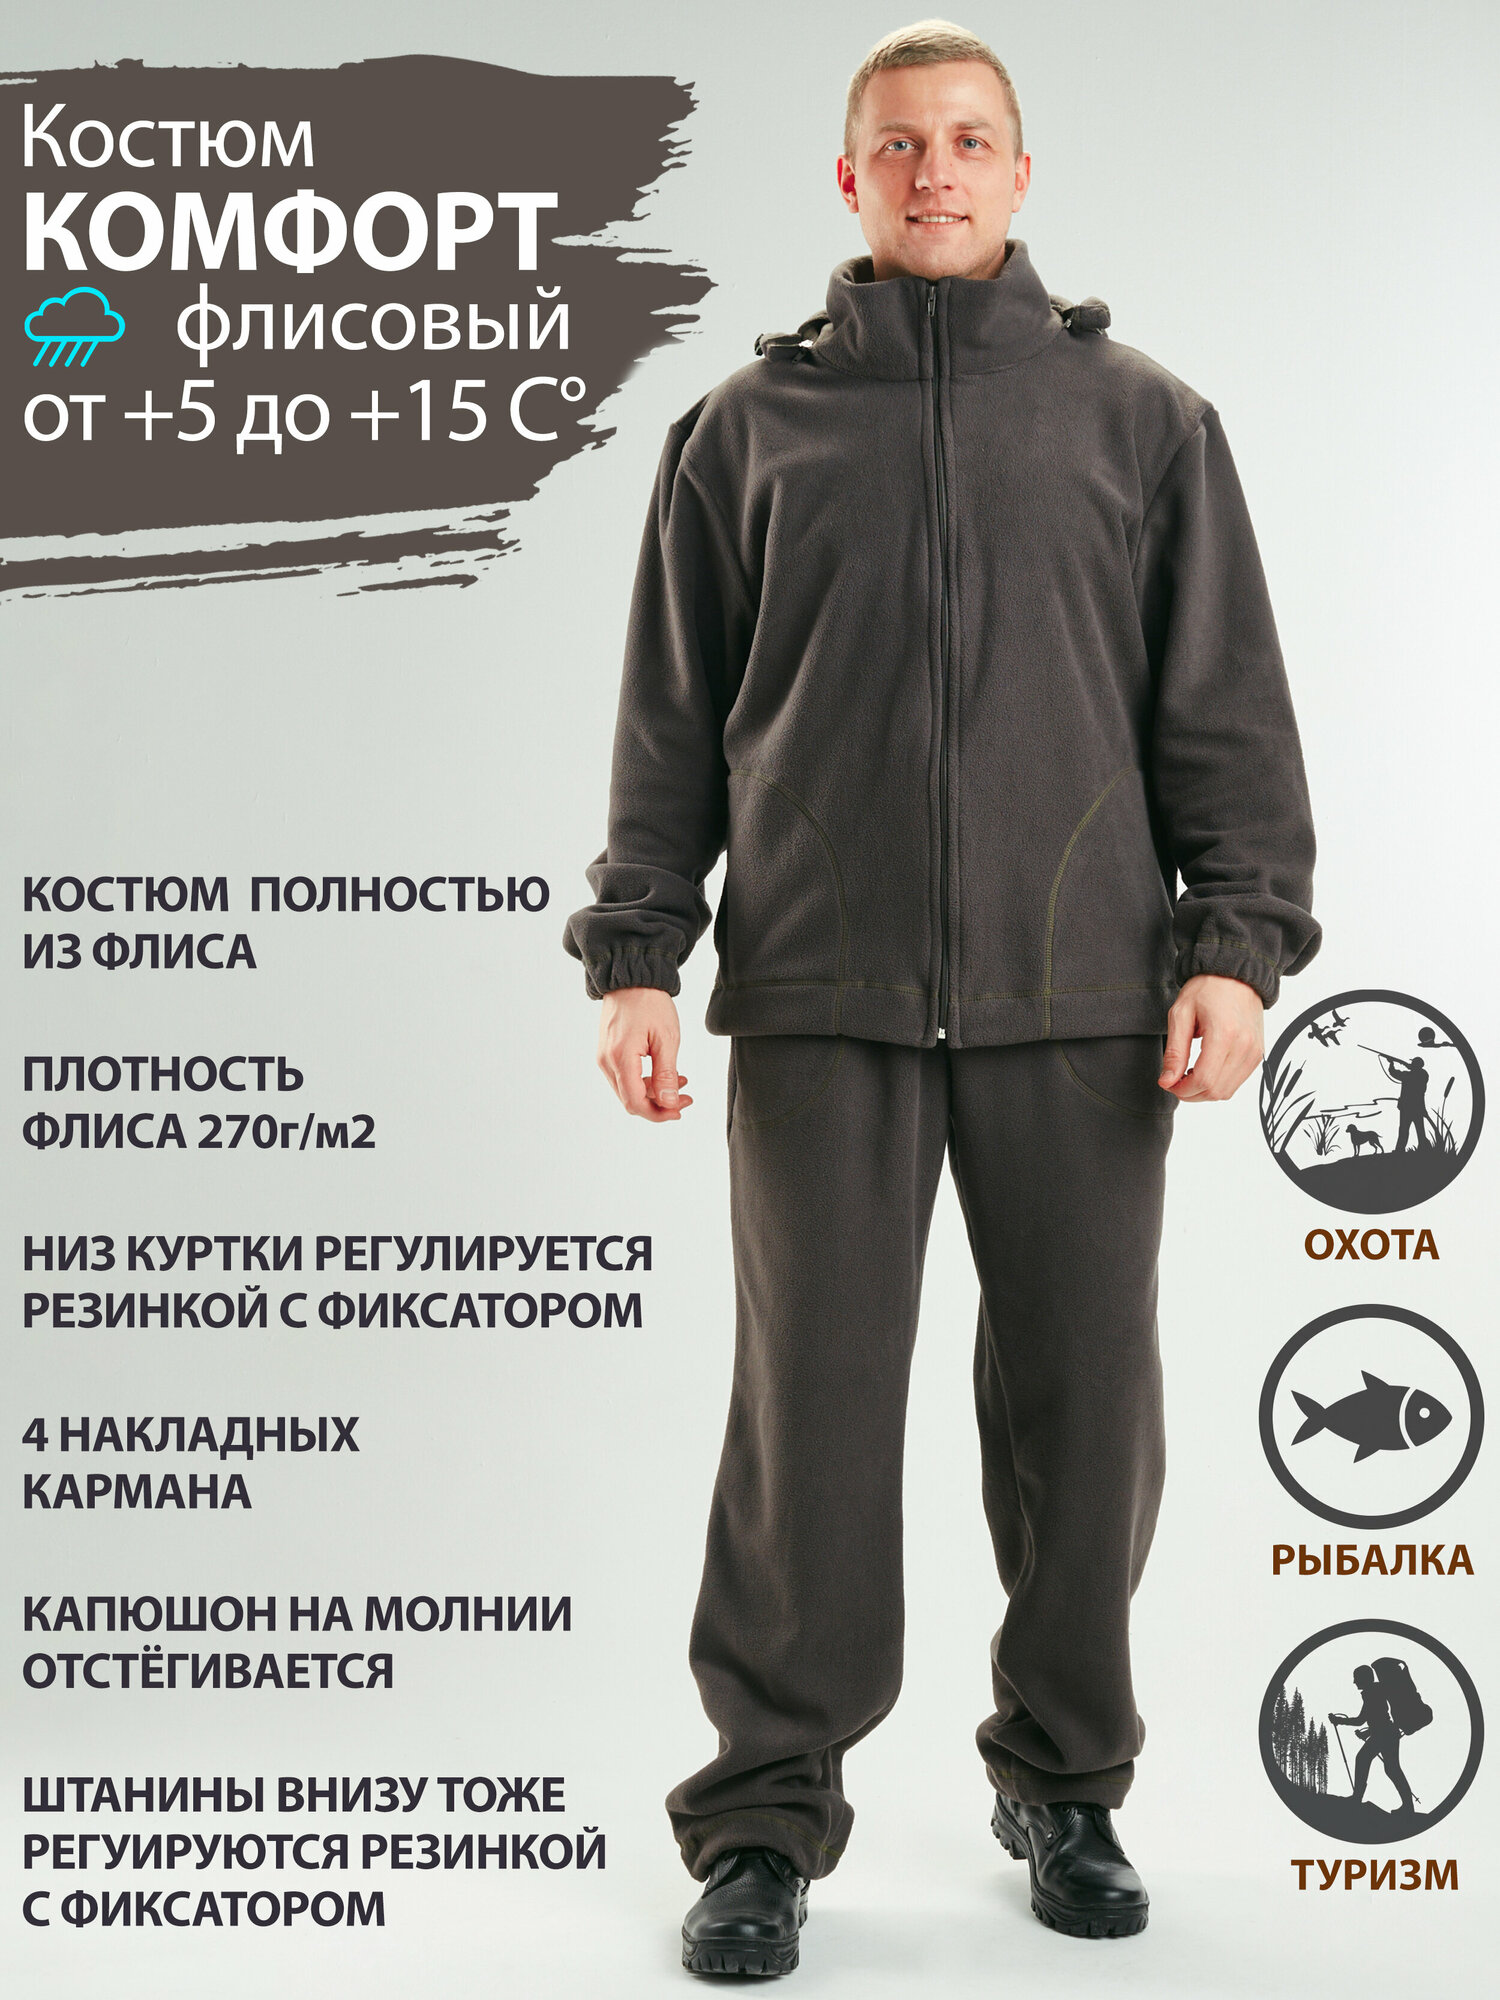 Восток-текс / костюм мужской Комфорт флис спортивный для активного отдыха, охота, рыбалка, туризм